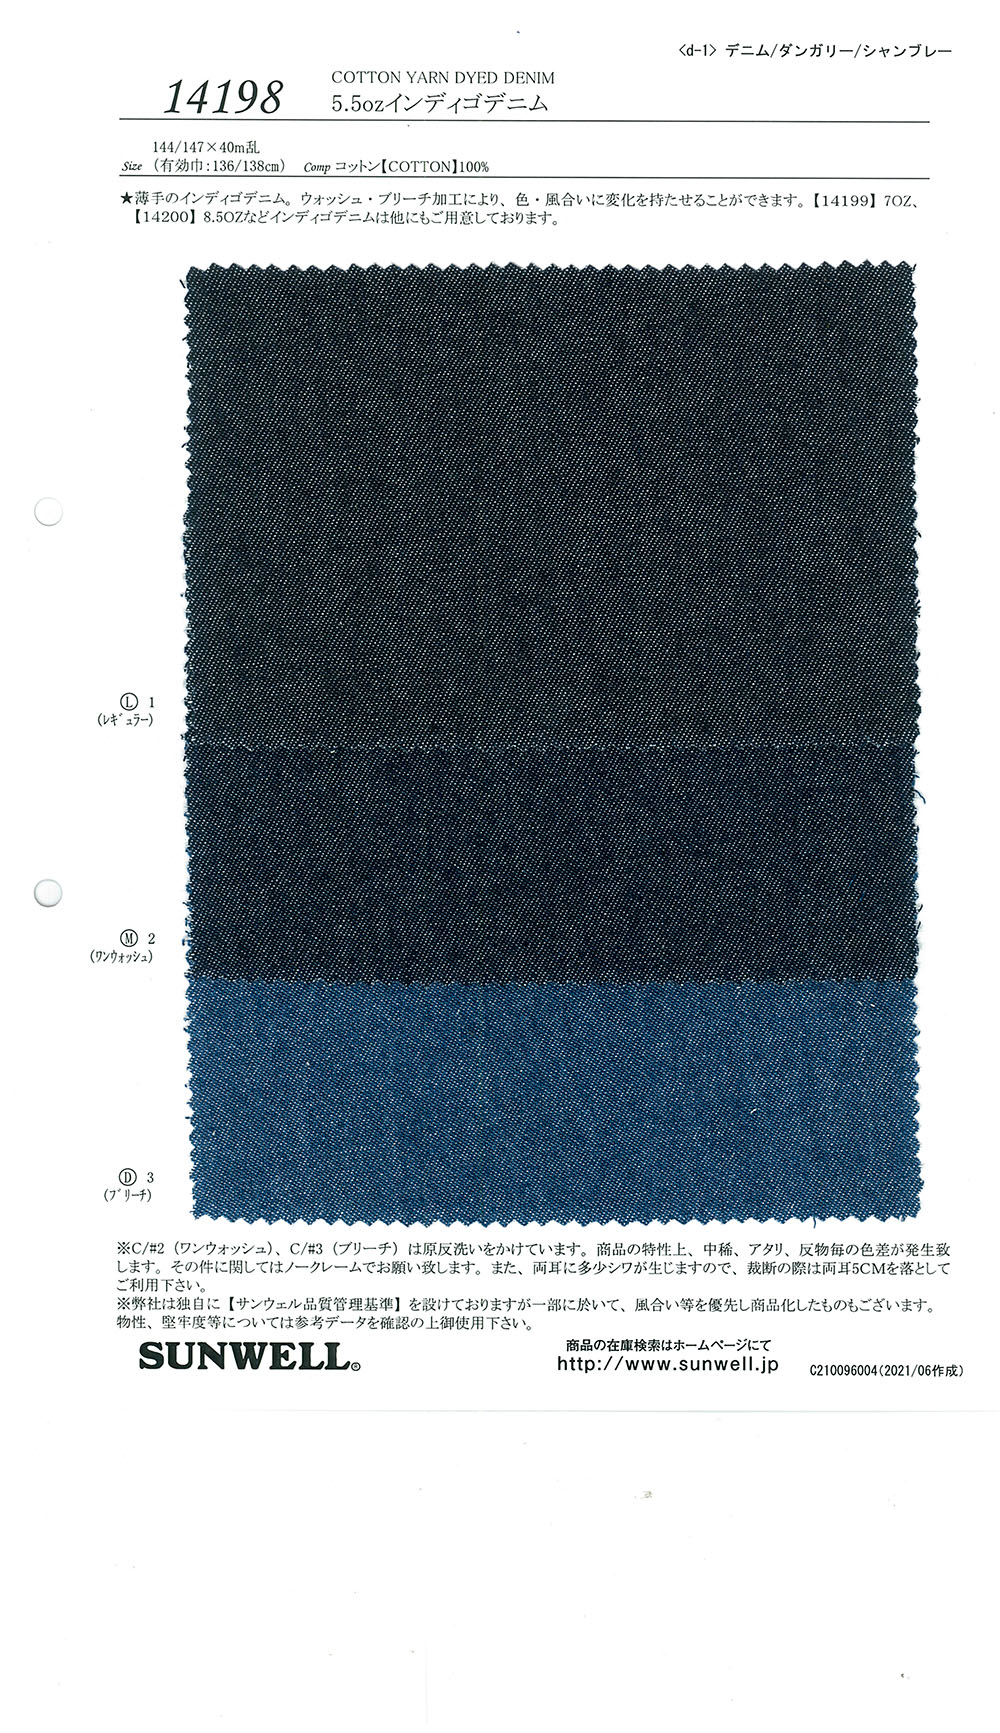 14198 5,5 Unzen Indigo-Denim[Textilgewebe] SUNWELL